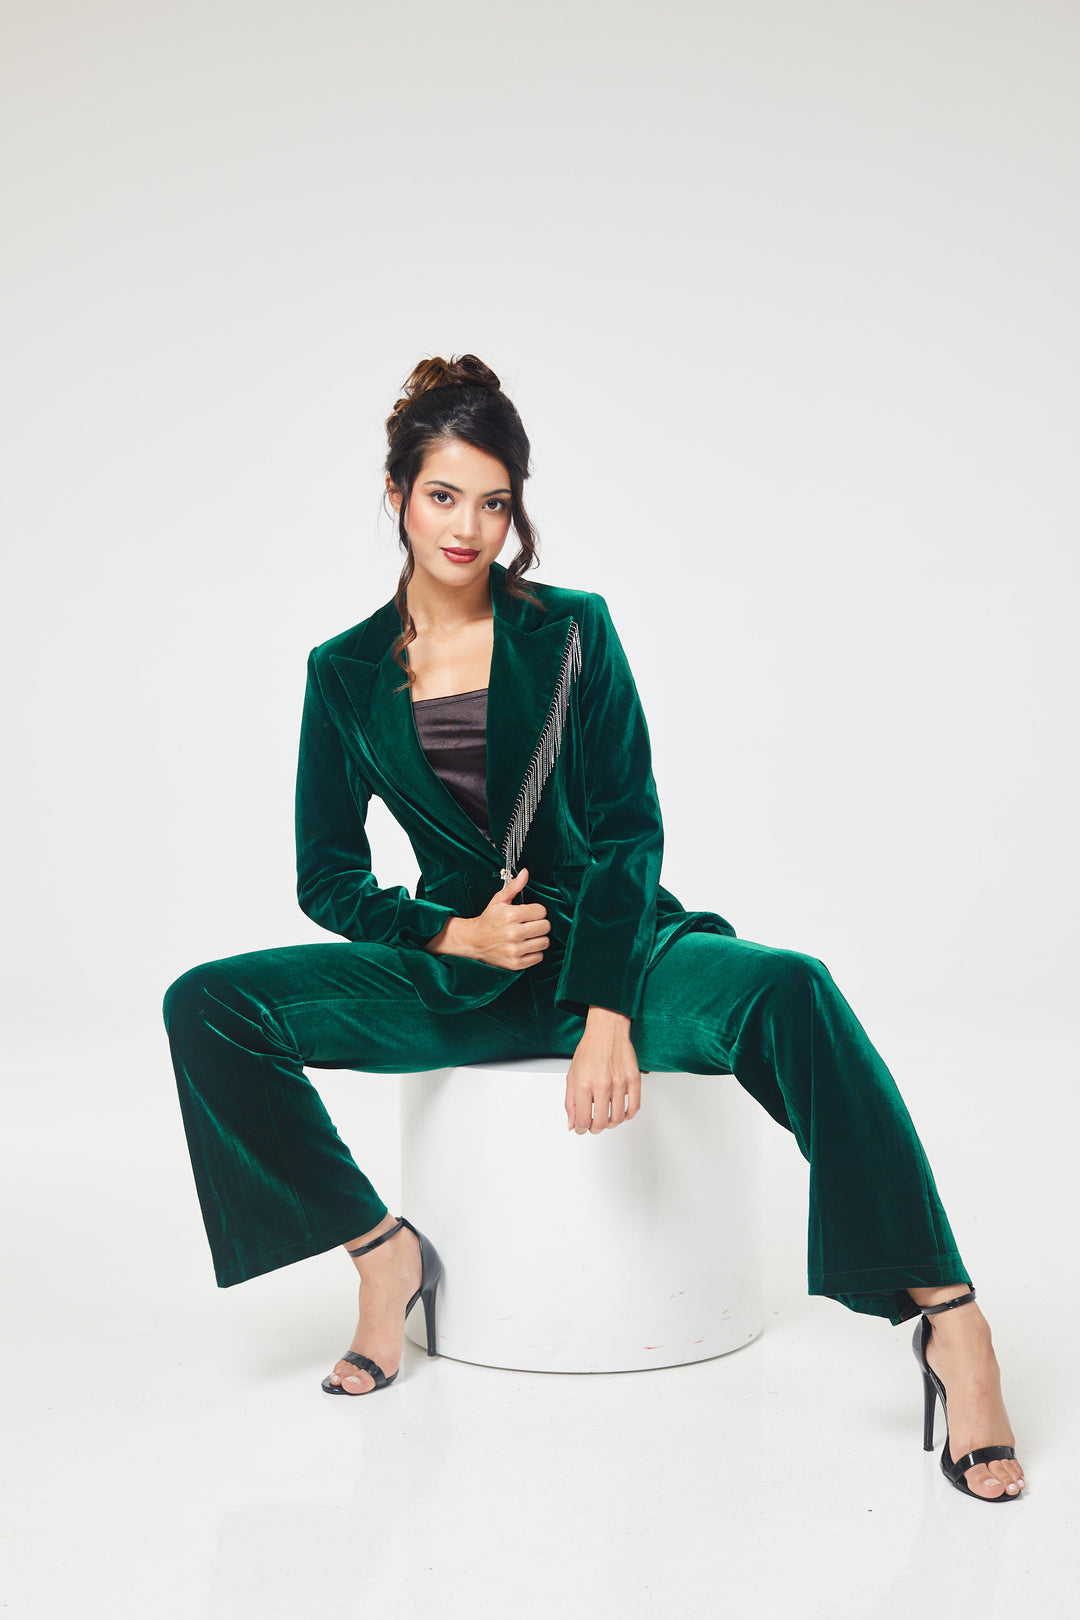 Beige 3-Piece Trouser Suit - Shop Women's Business Suits – LuvForever  Fashion